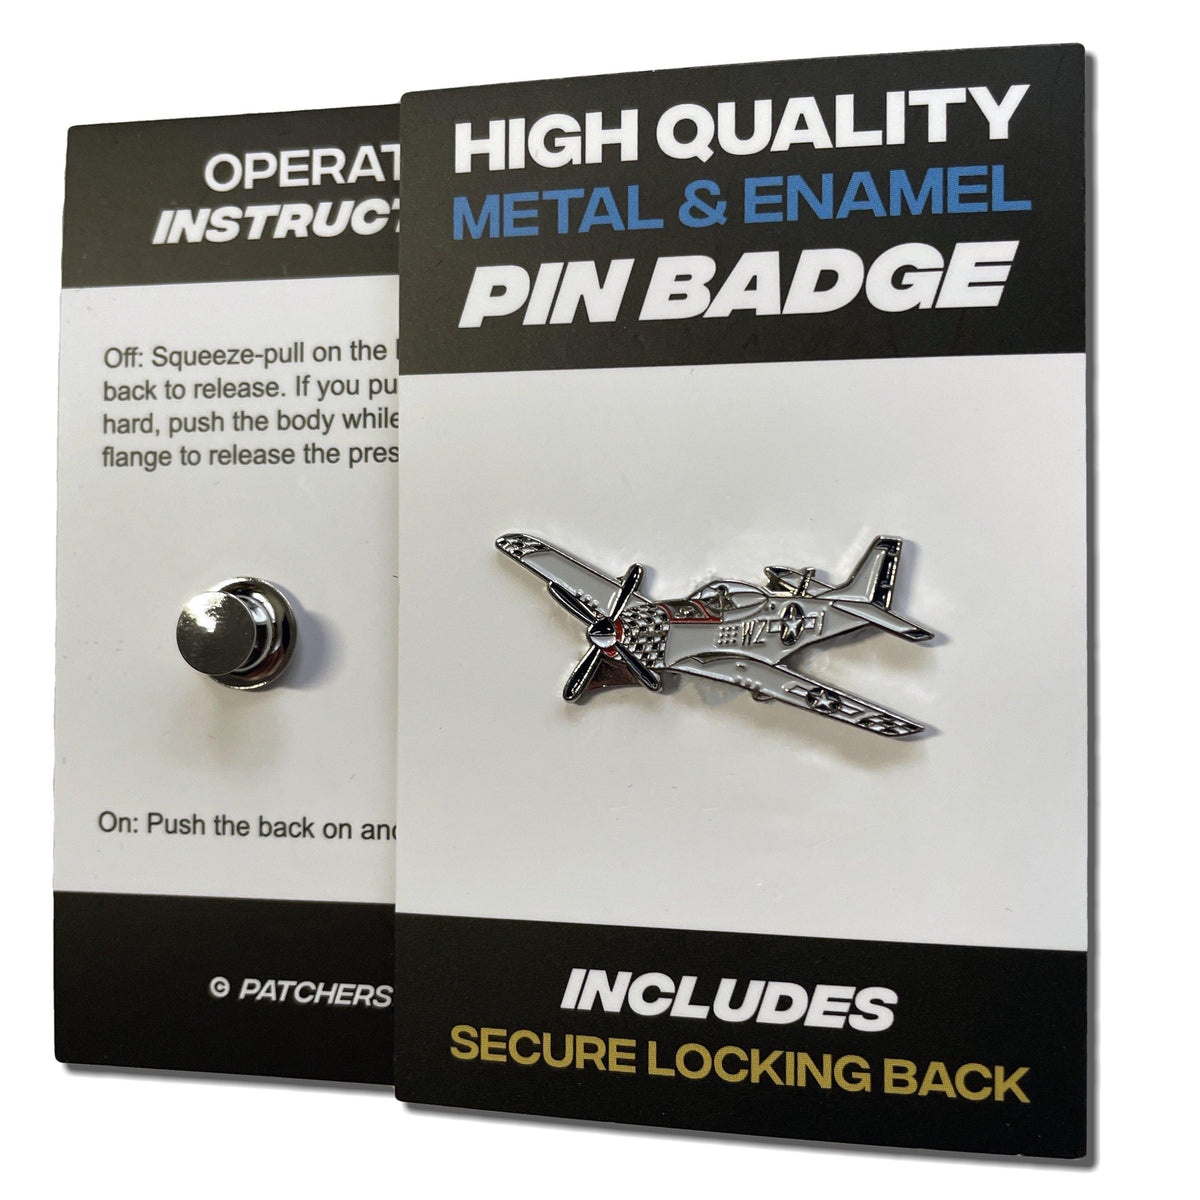 Metal & Enamel P51 Mustang Plane Pin Badge with Secure Locking